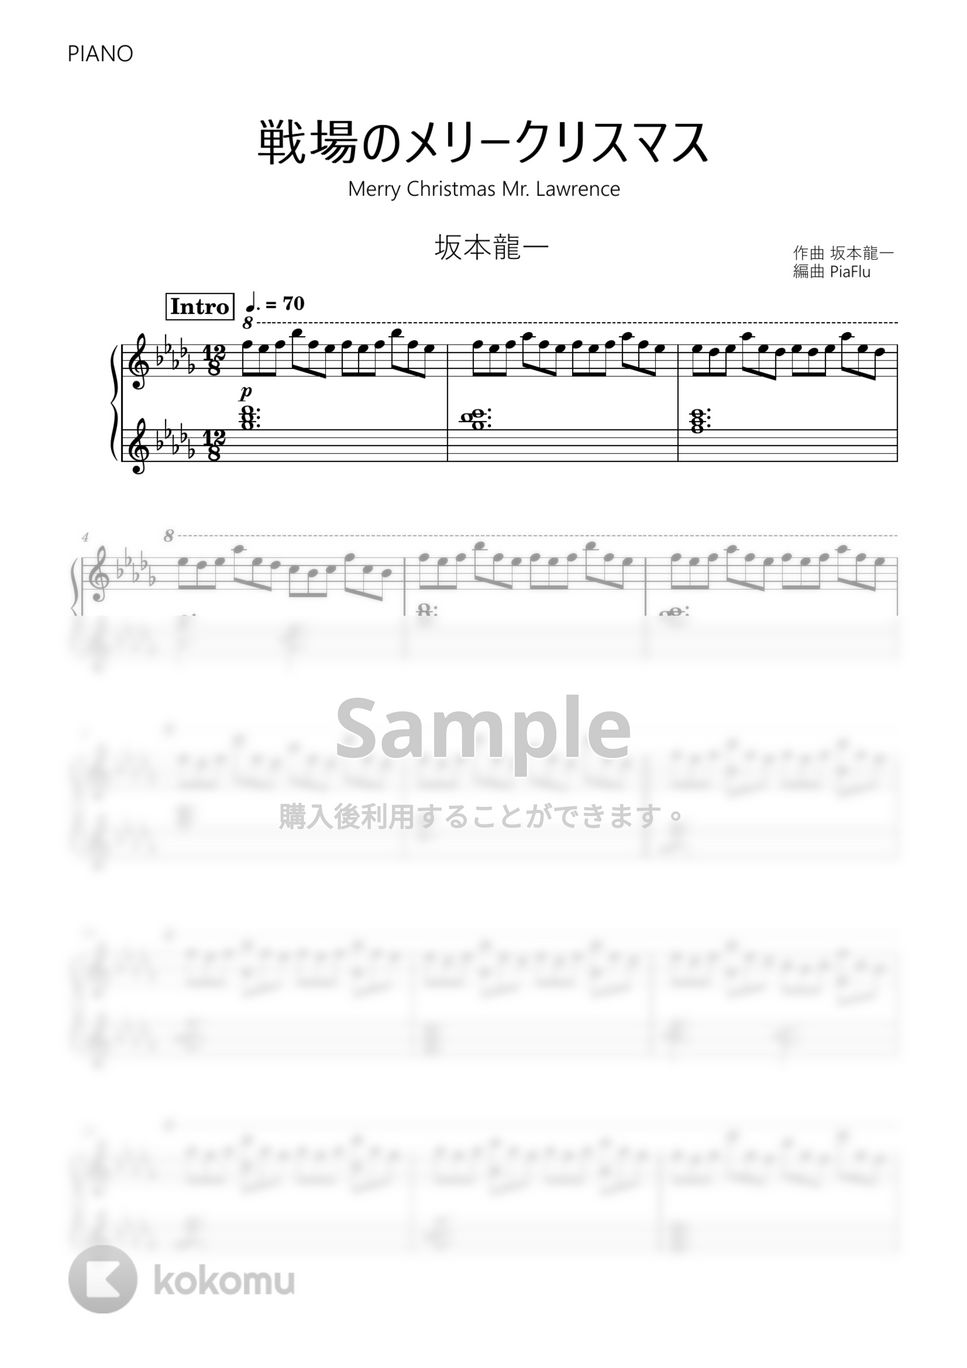 坂本龍一 - 戦場のメリークリスマス (ピアノ) by PiaFlu